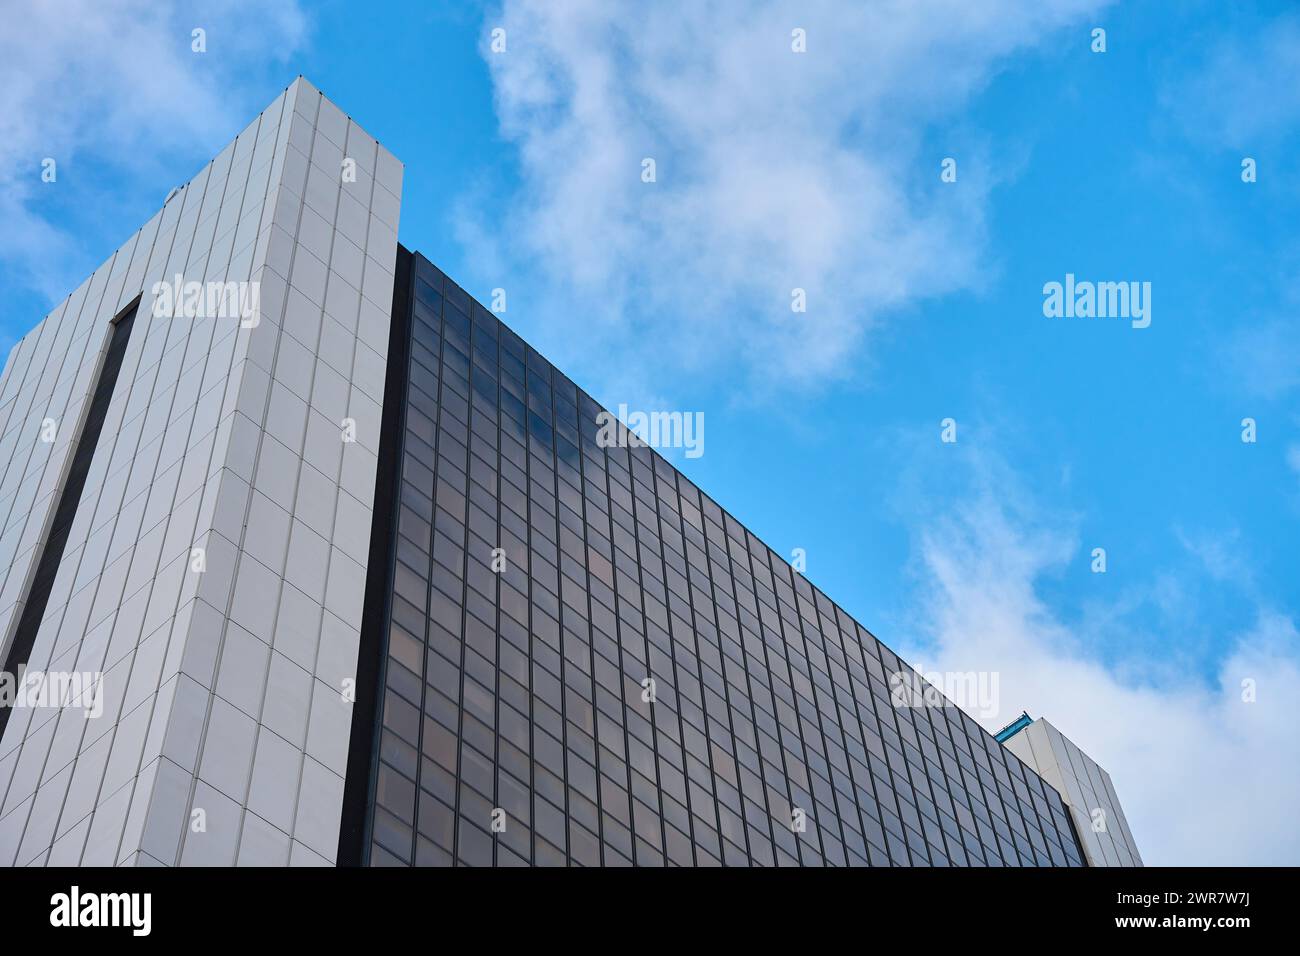 Imposant immeuble de bureaux contemporain en ville contre le ciel nuageux, extérieur d'architecture moderne avec fenêtres en verre. Banque D'Images